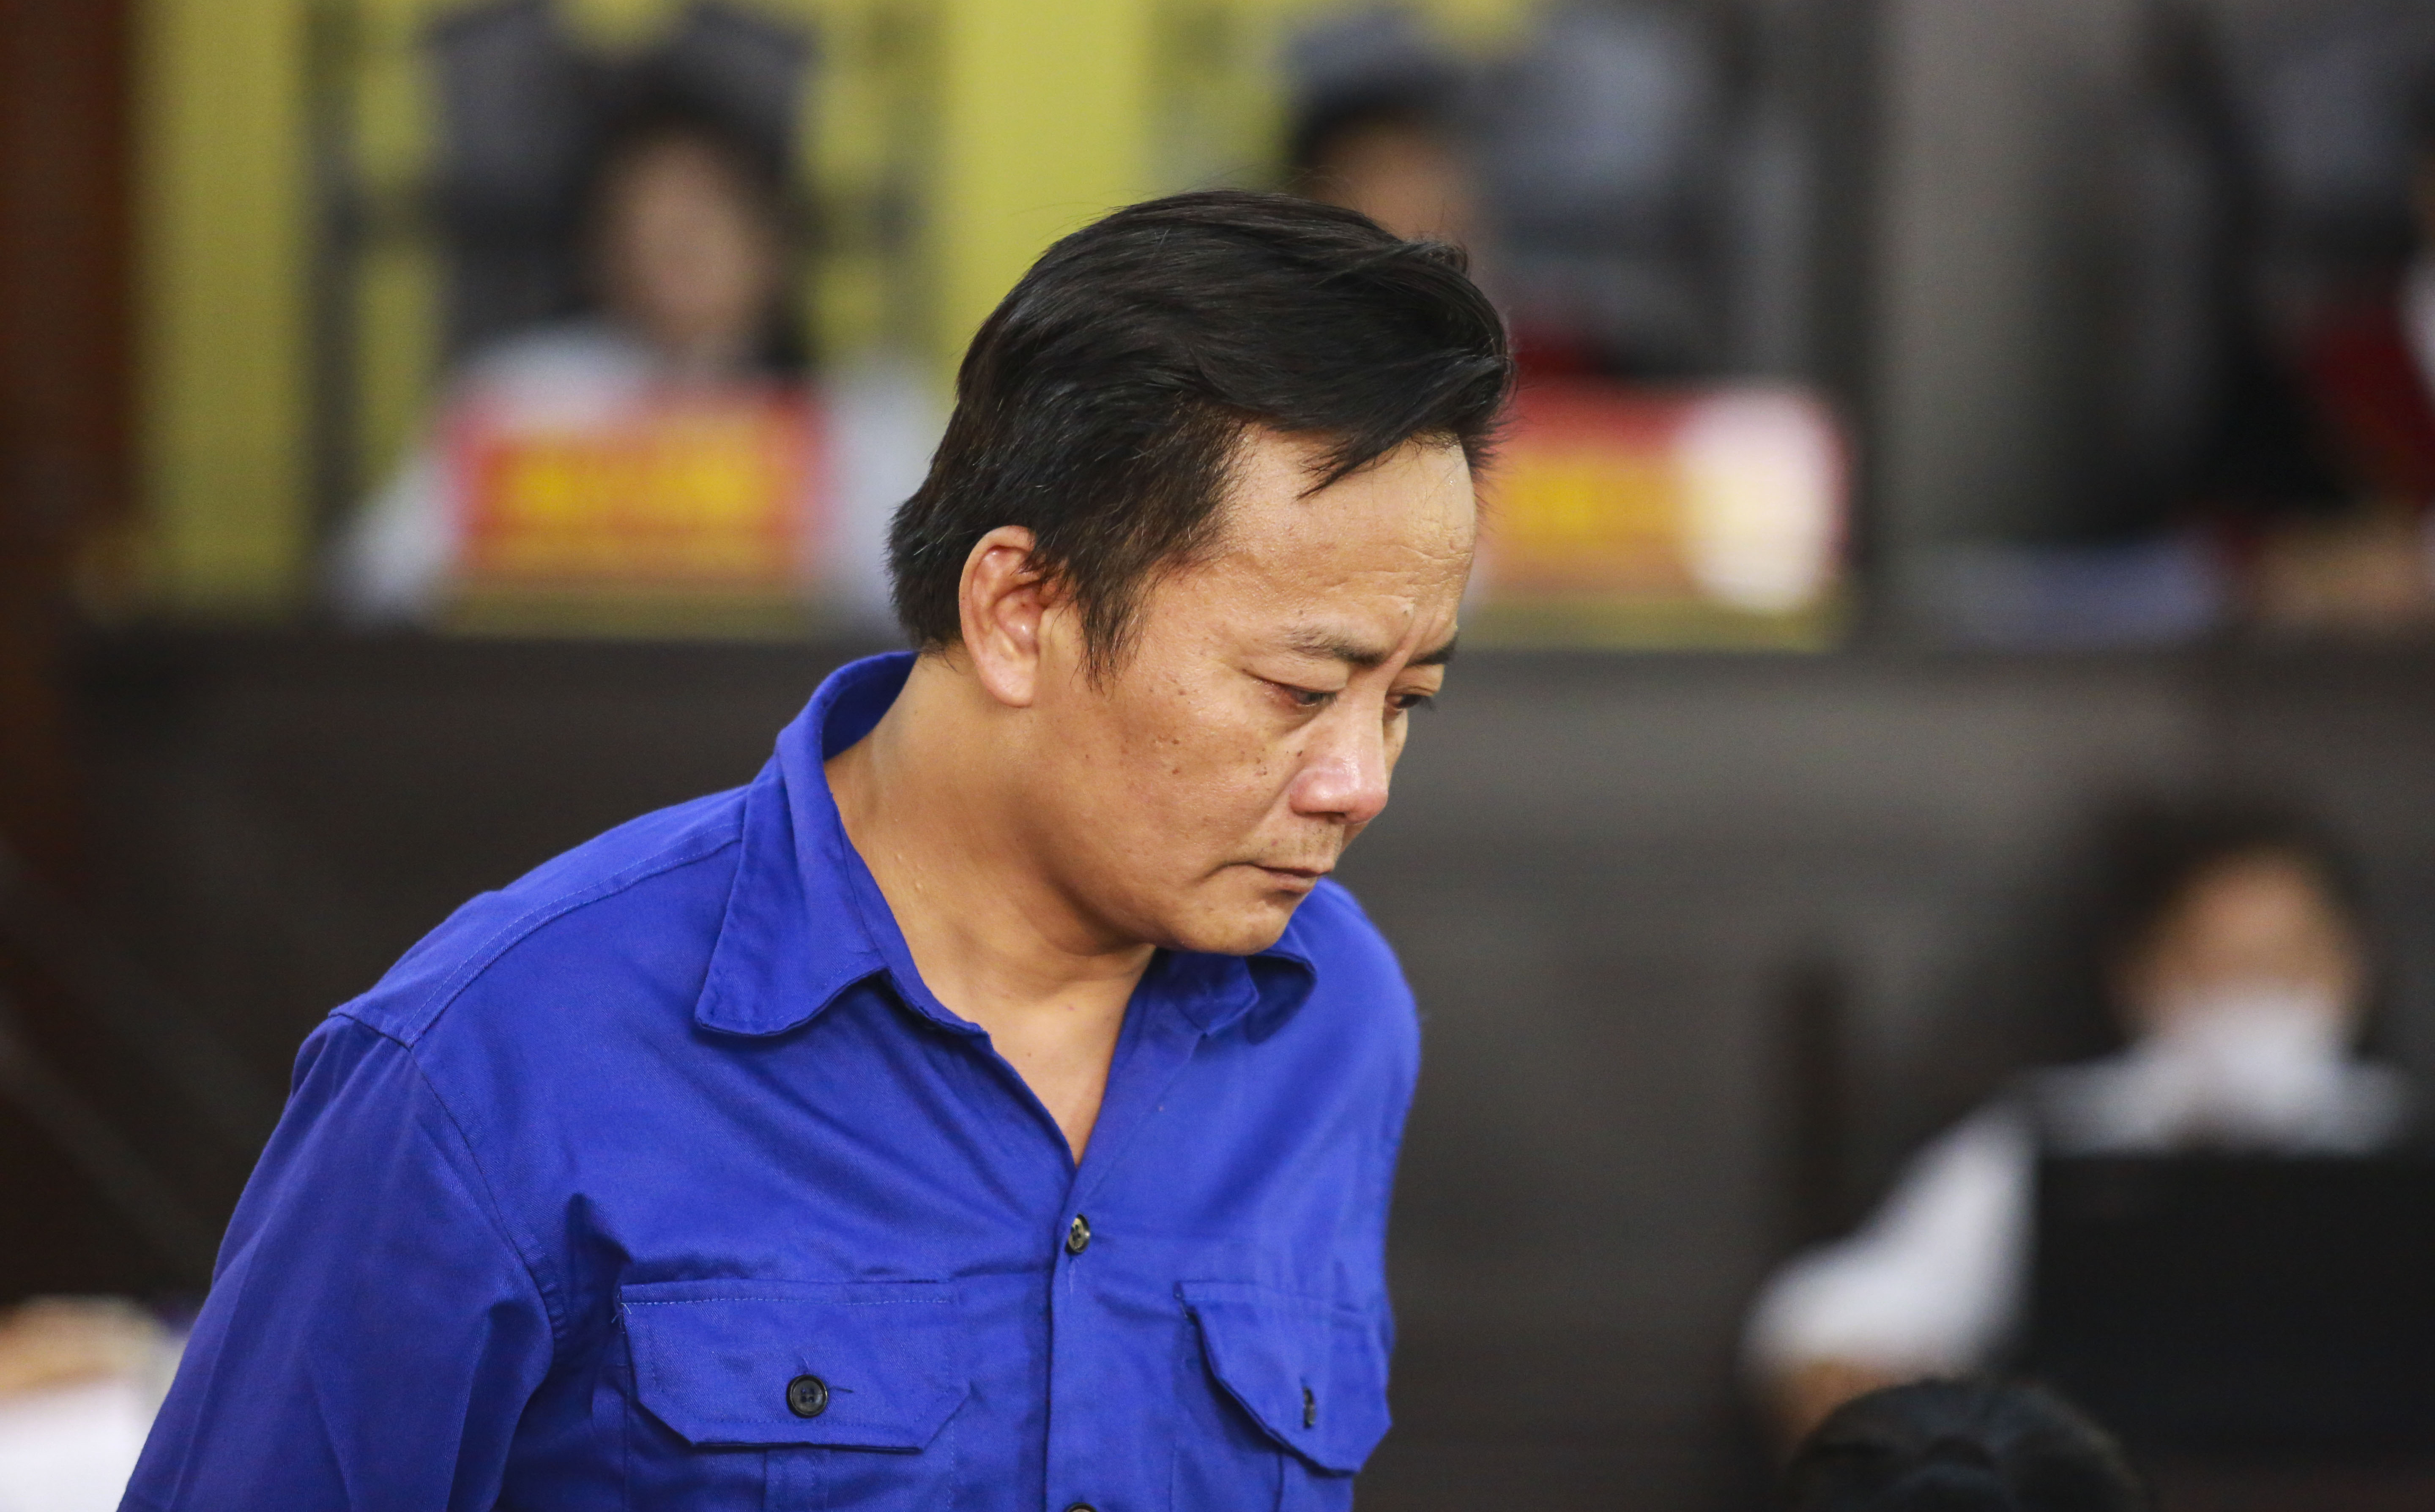 Xét xử gian lận thi cử tại Sơn La: Cựu phó phòng PA03 phủ nhận việc đưa hối lộ, nêu quan điểm tự bào chữa, gỡ tội